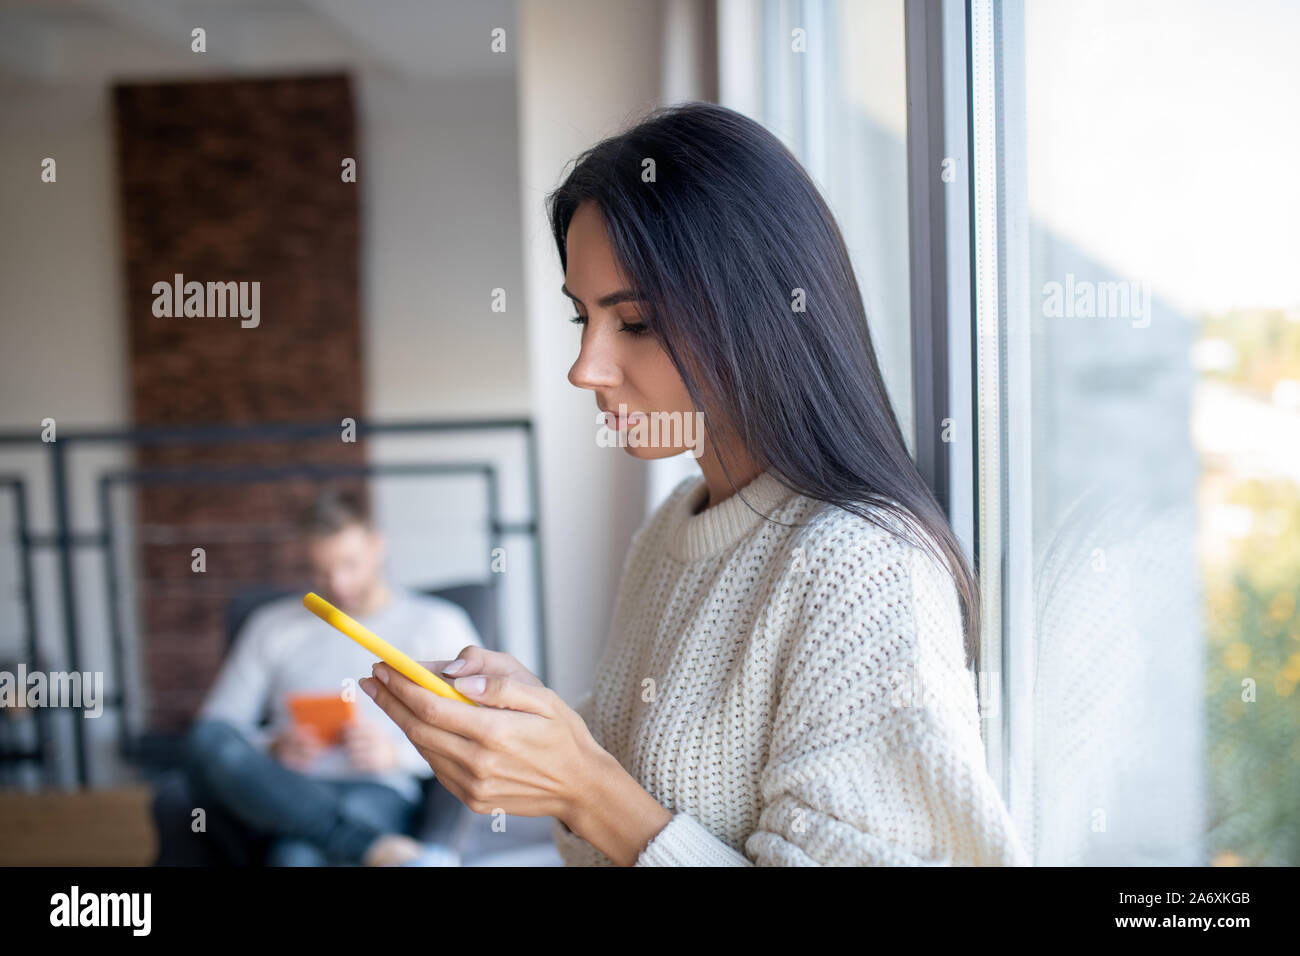 Dark-haired wife standing near window using phone Stock Photo